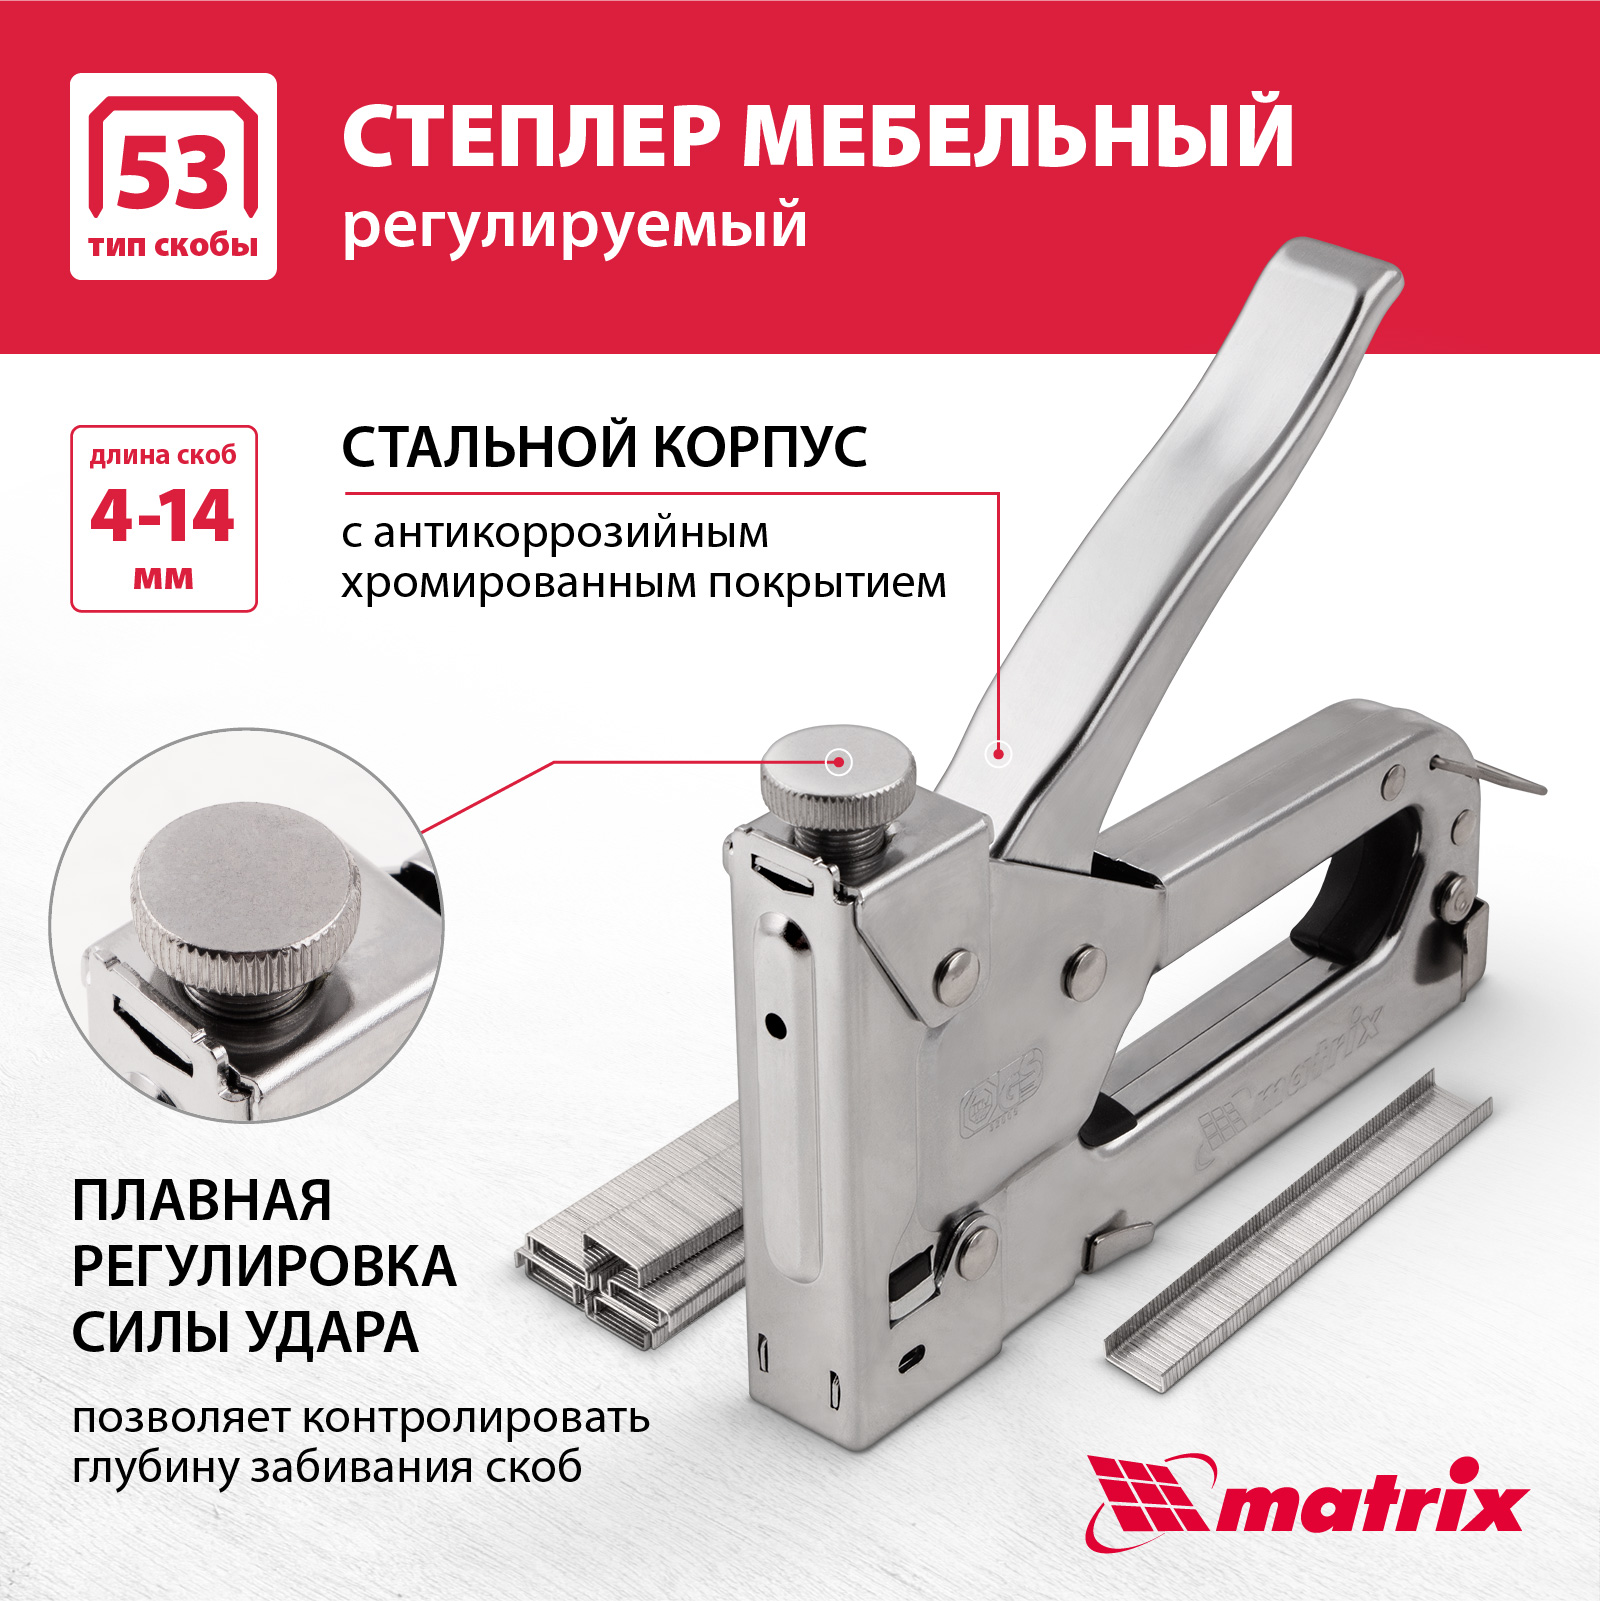 Степлер мебельный регулируемый MATRIX 40902 тип скобы 53, 4-14 мм степлер мебельный регулируемый matrix 40902 тип скобы 53 4 14 мм